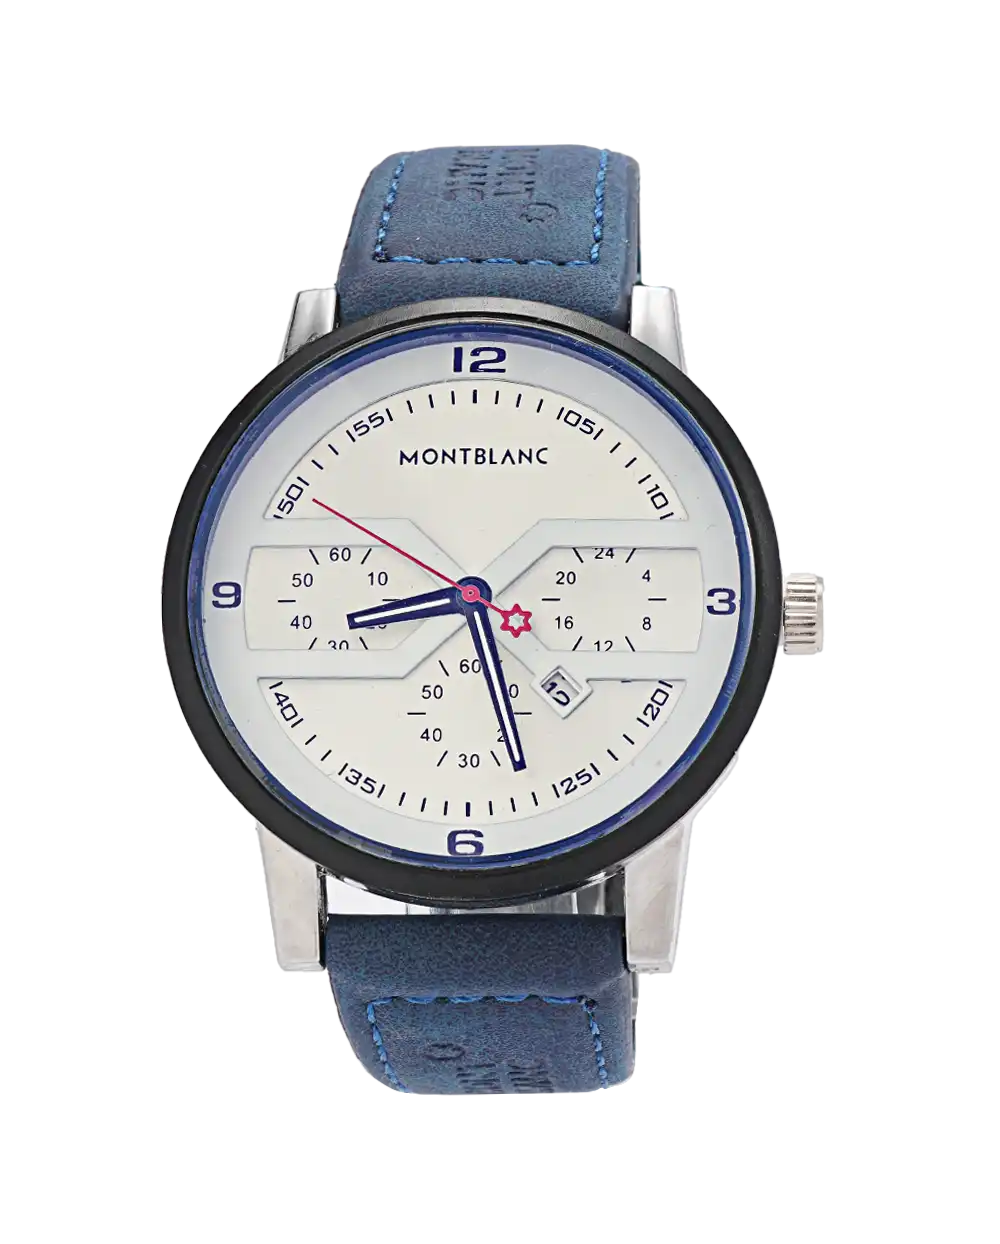 خرید ساعت مچی مردانه مونت بلانک MONTBLANC مدل 1788 بند چرمی آبی بهترین قیمت به همراه جعبه و ارسال رایگان به سراسر ایران | ساعت پسرانه بند چرم